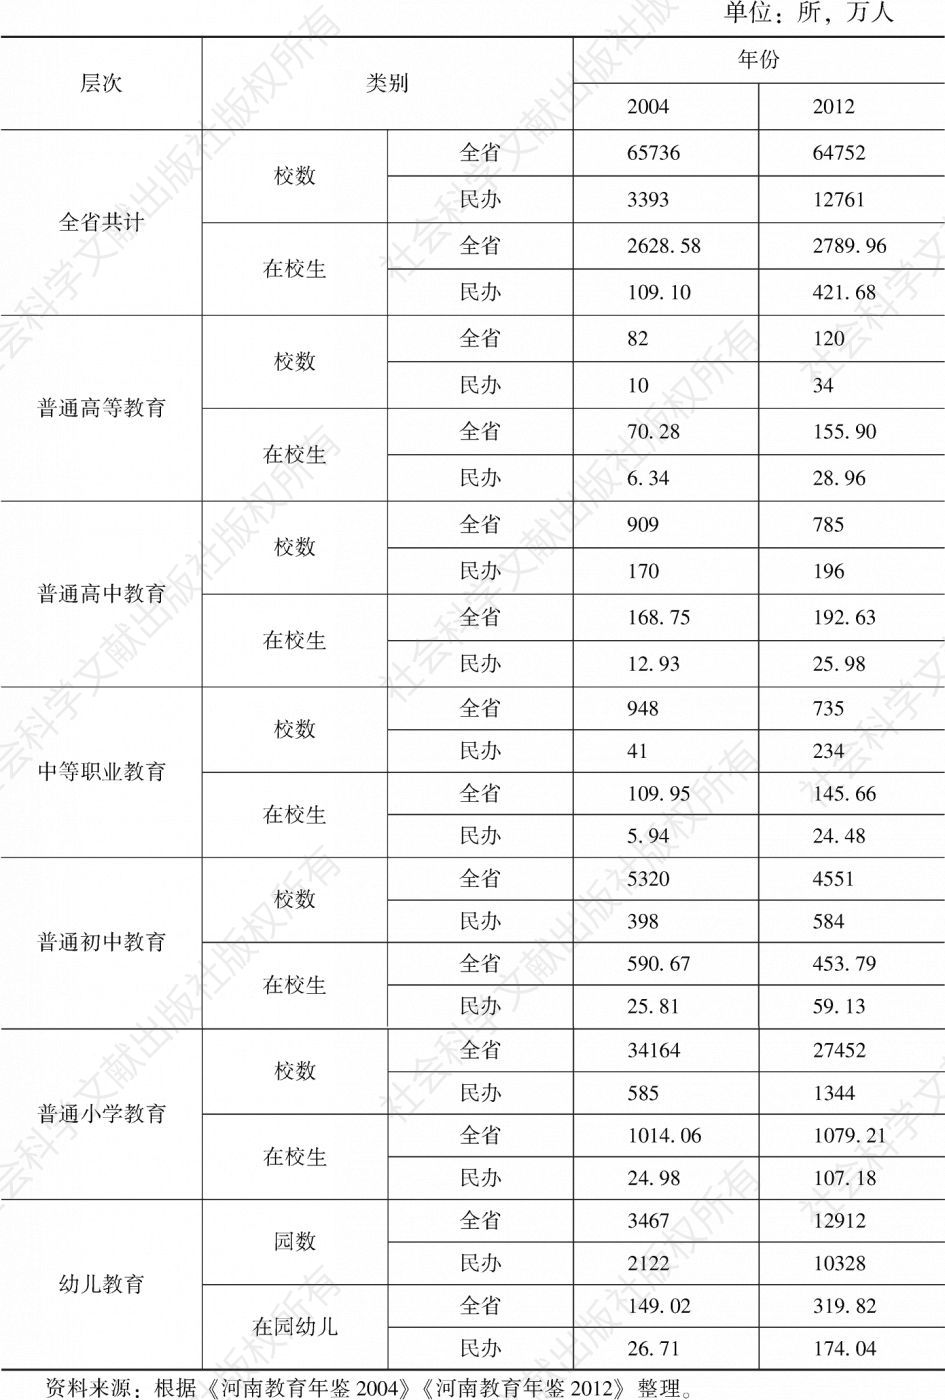 表1-4 2004年、2012年河南民办教育指标和全省比较情况